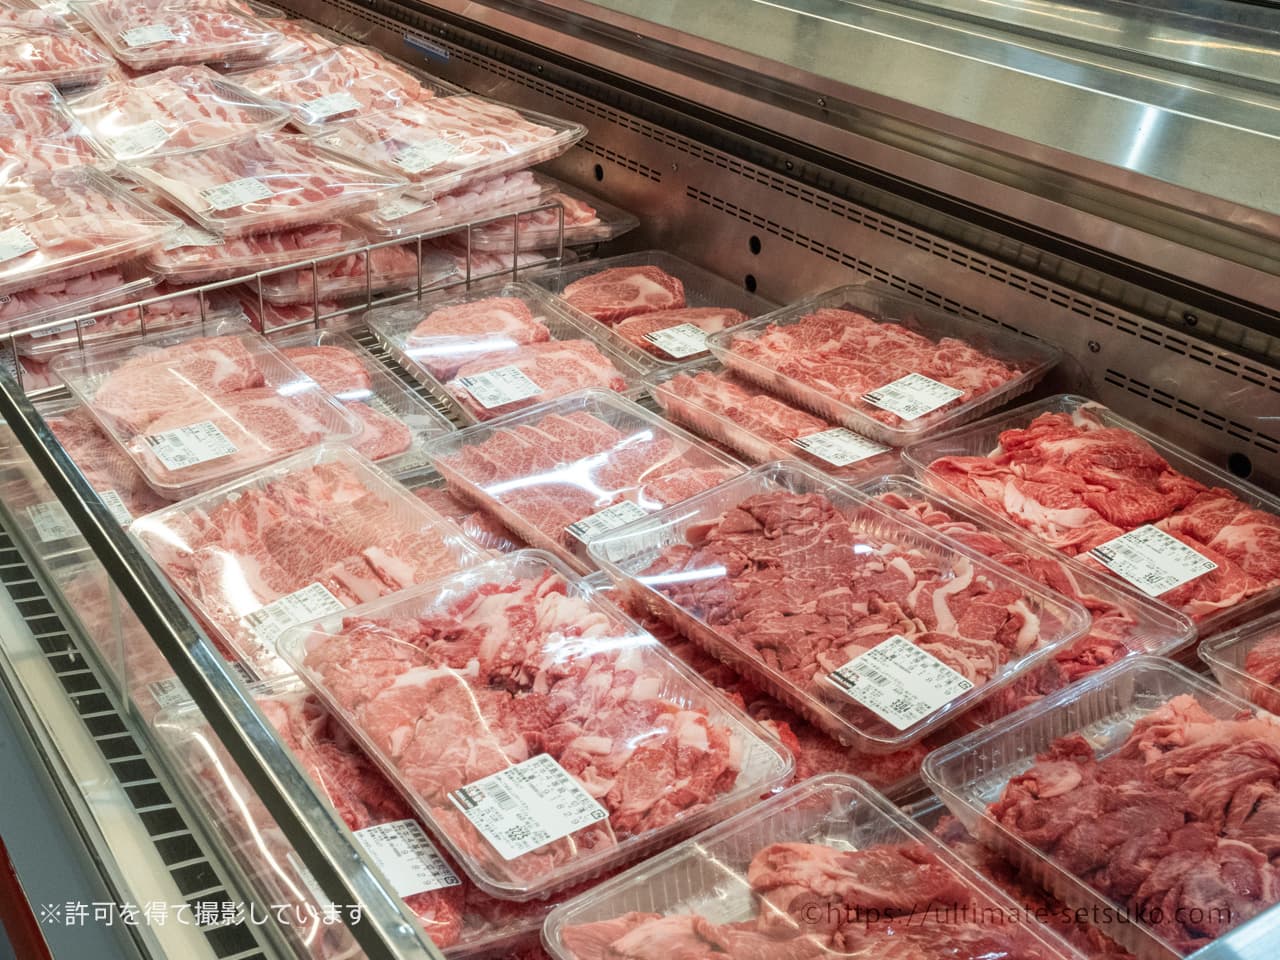 コストコのお肉 厳選おすすめ商品ランキングtop72 21年最新版